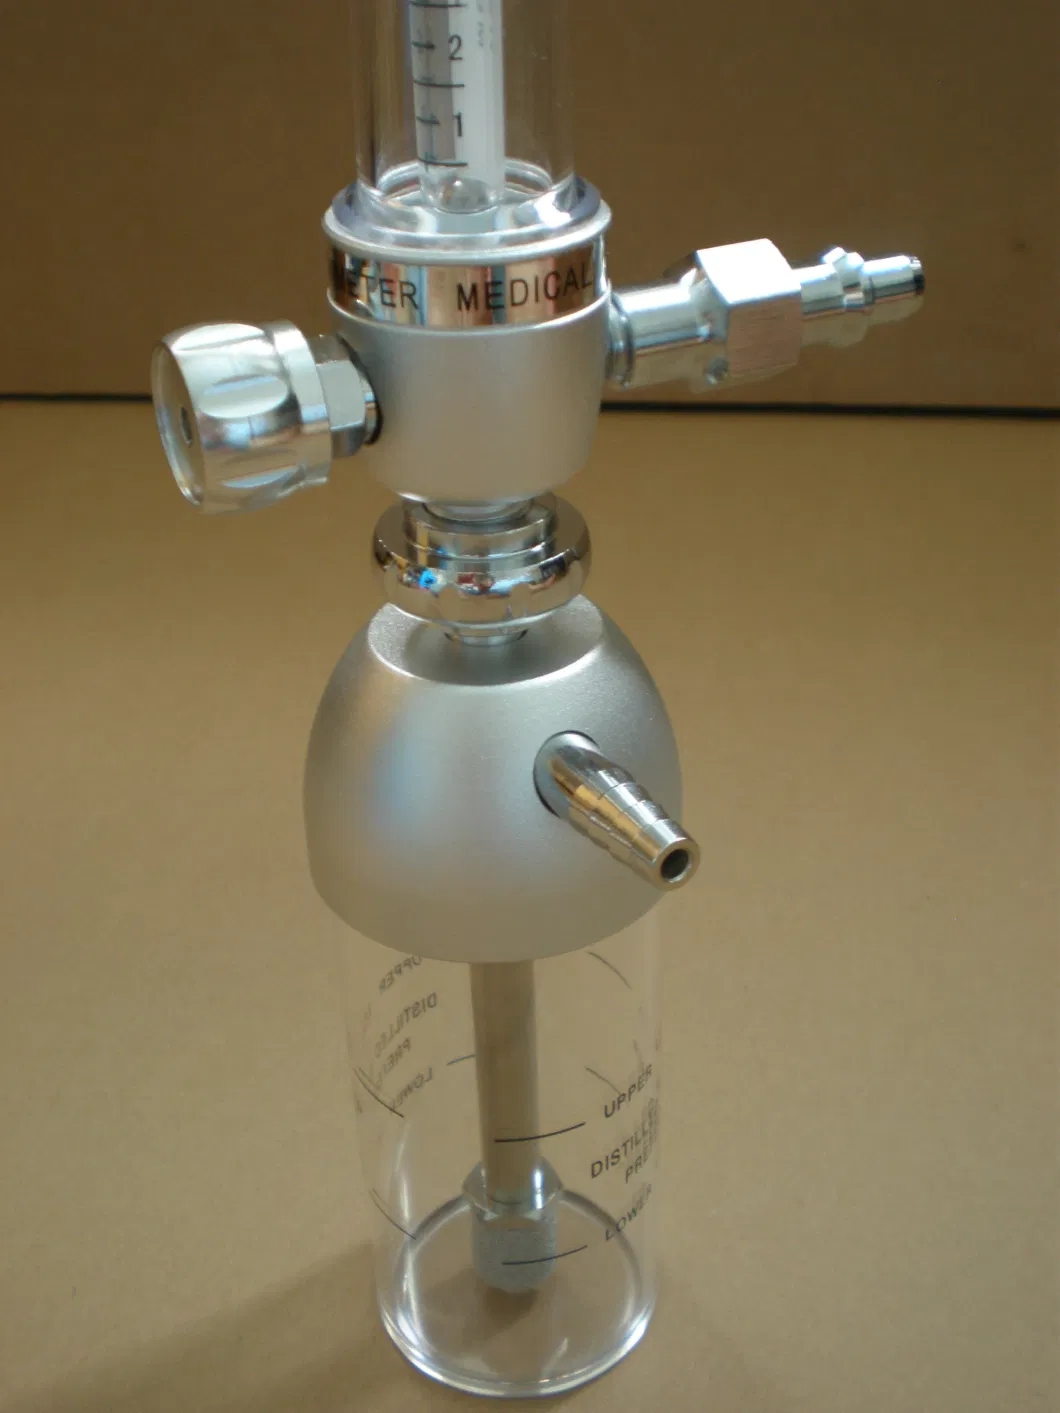 Lw-Flm-4 Oxygen Flowmeter with Humidifier Bottle